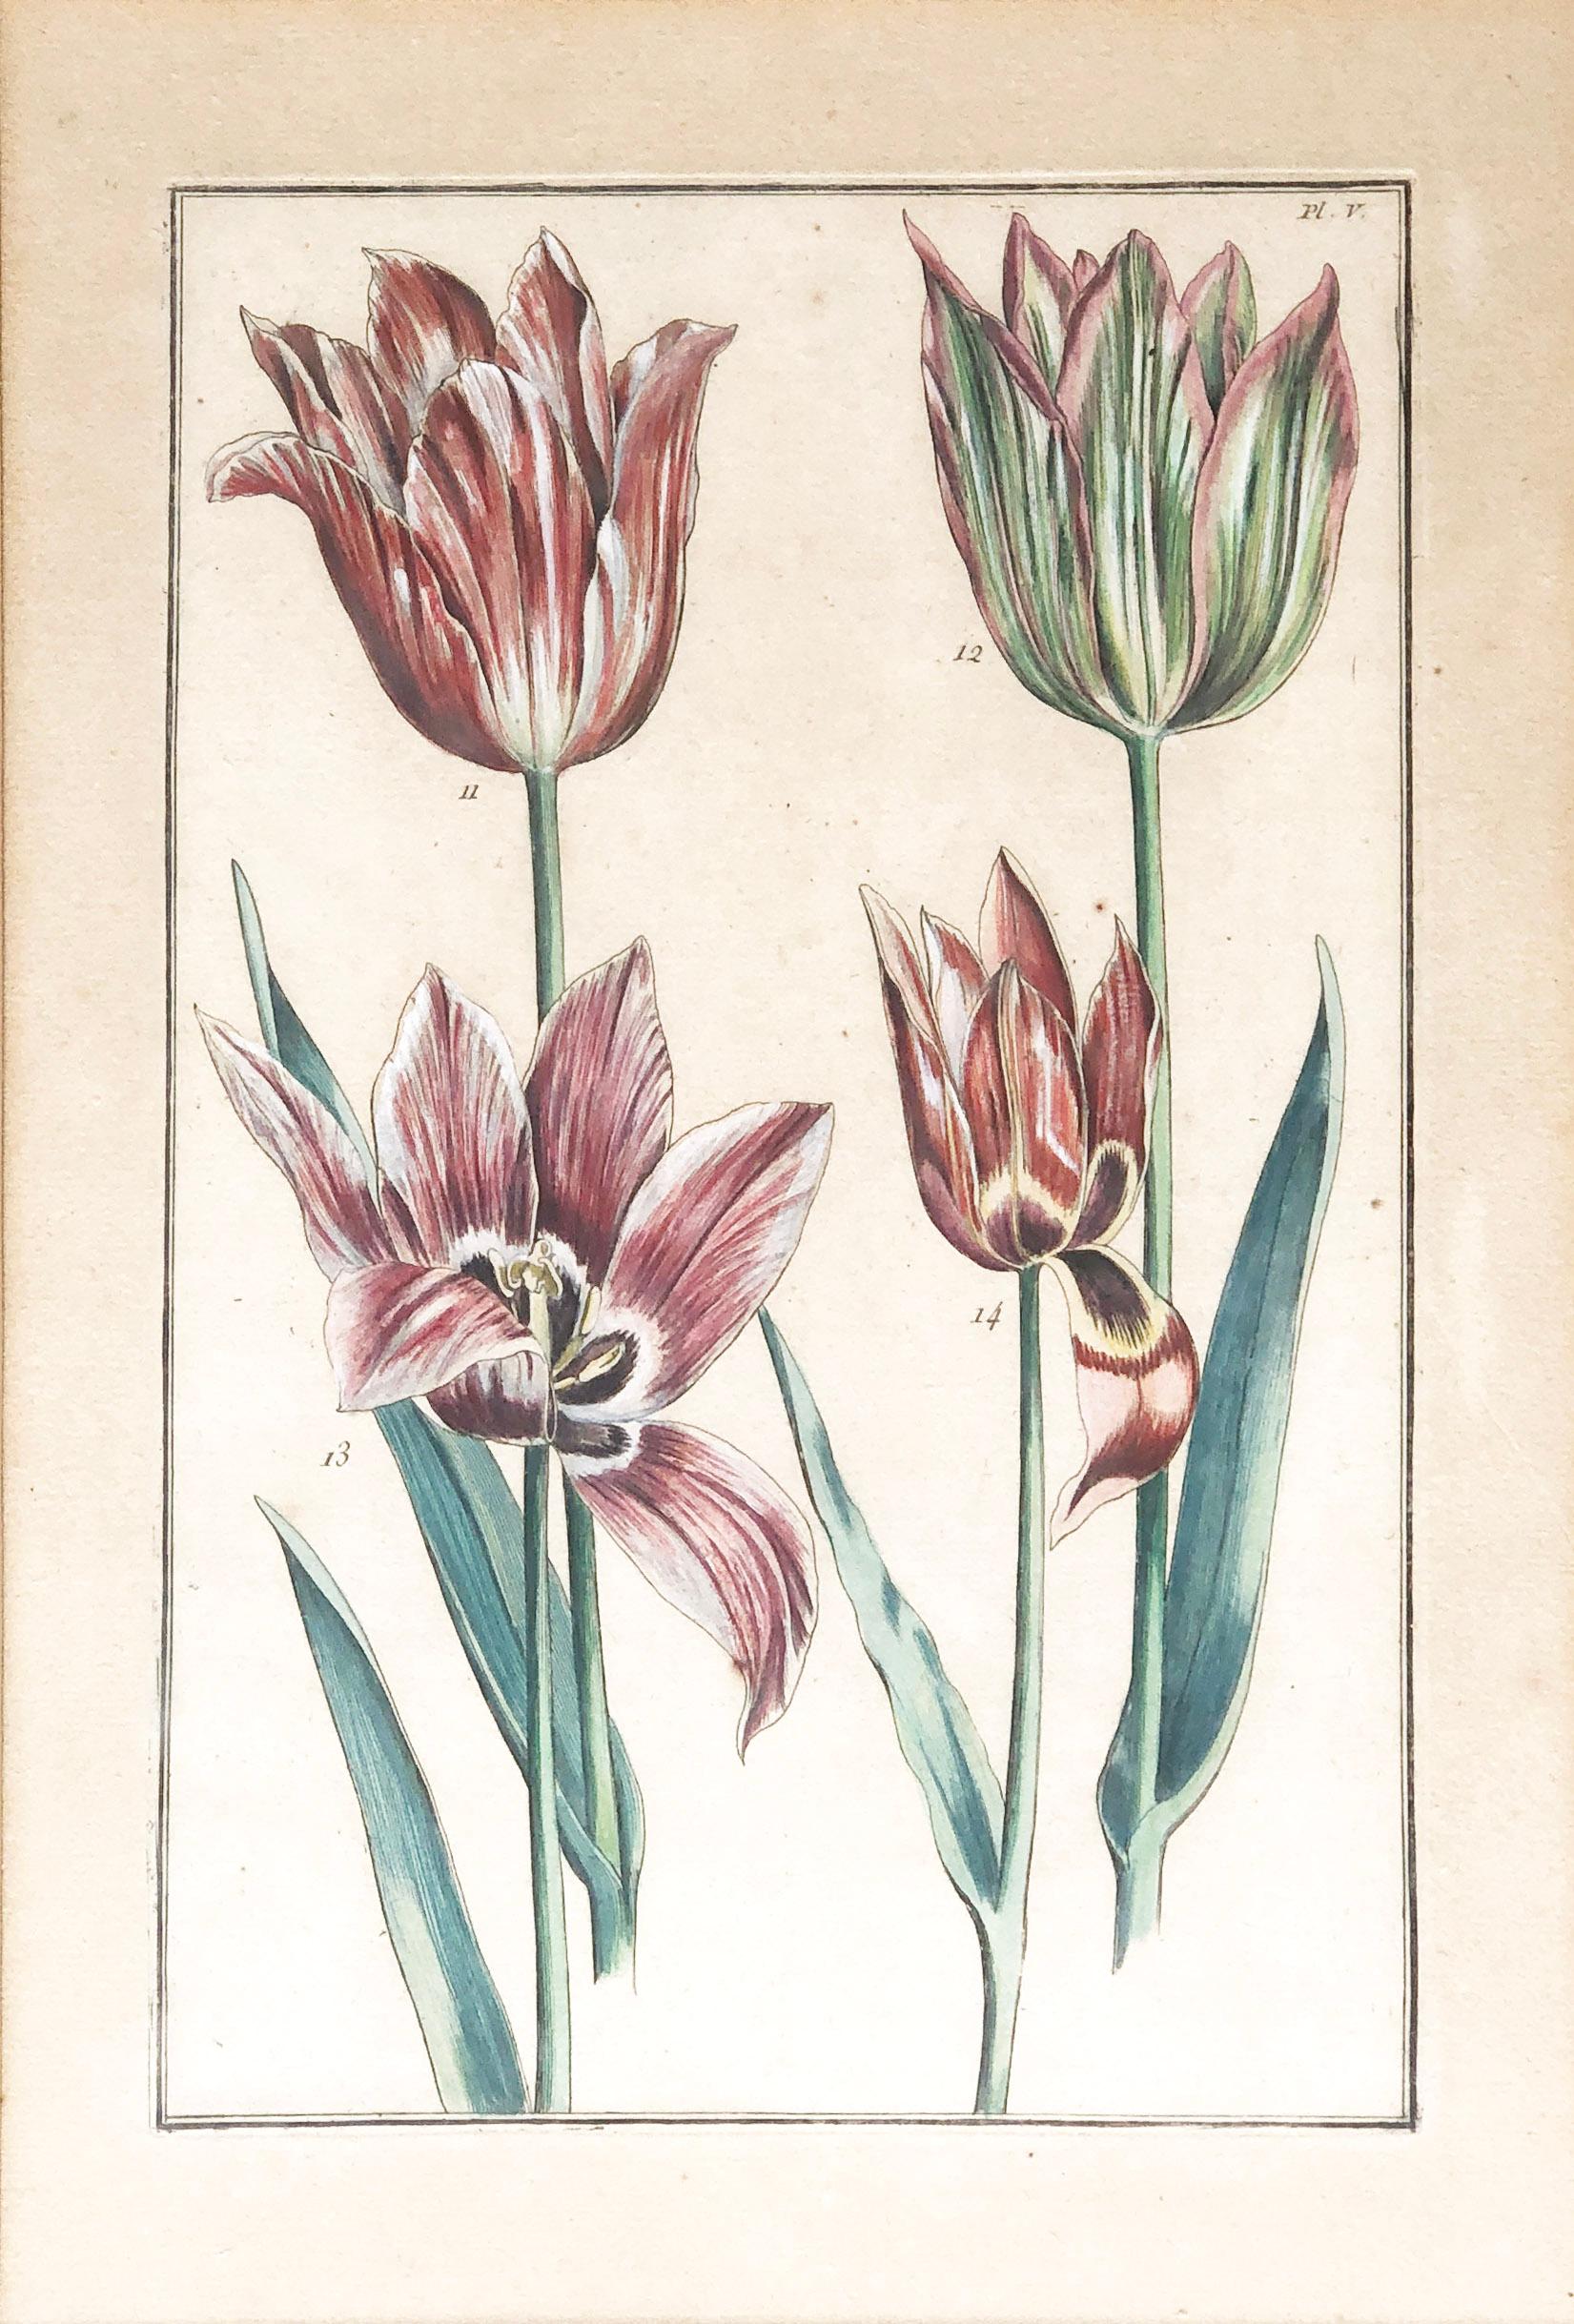 L'UNE DES PLUS BELLES GRAVURES DE TULIPES JAMAIS PUBLIÉES Quatre tulipes PL.V. (planche 5), gravure sur cuivre réalisée par Em(m)anuel Sweert(s) et publiée par Daniel Rabel à Paris en 1622-1633 dans le cadre du 